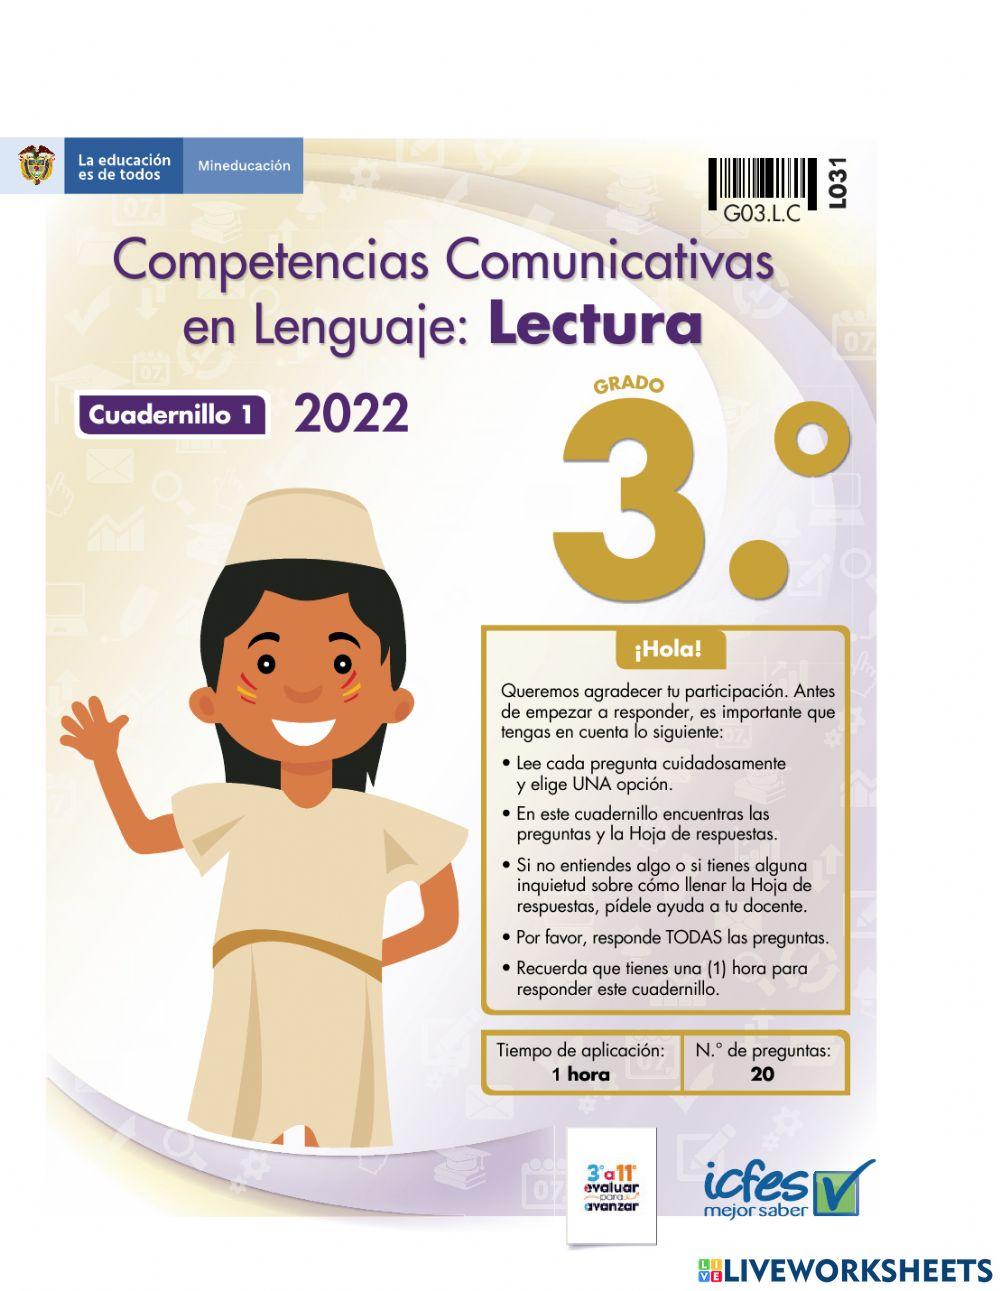 Competencias Comunicativas en Lenguaje: Lectura